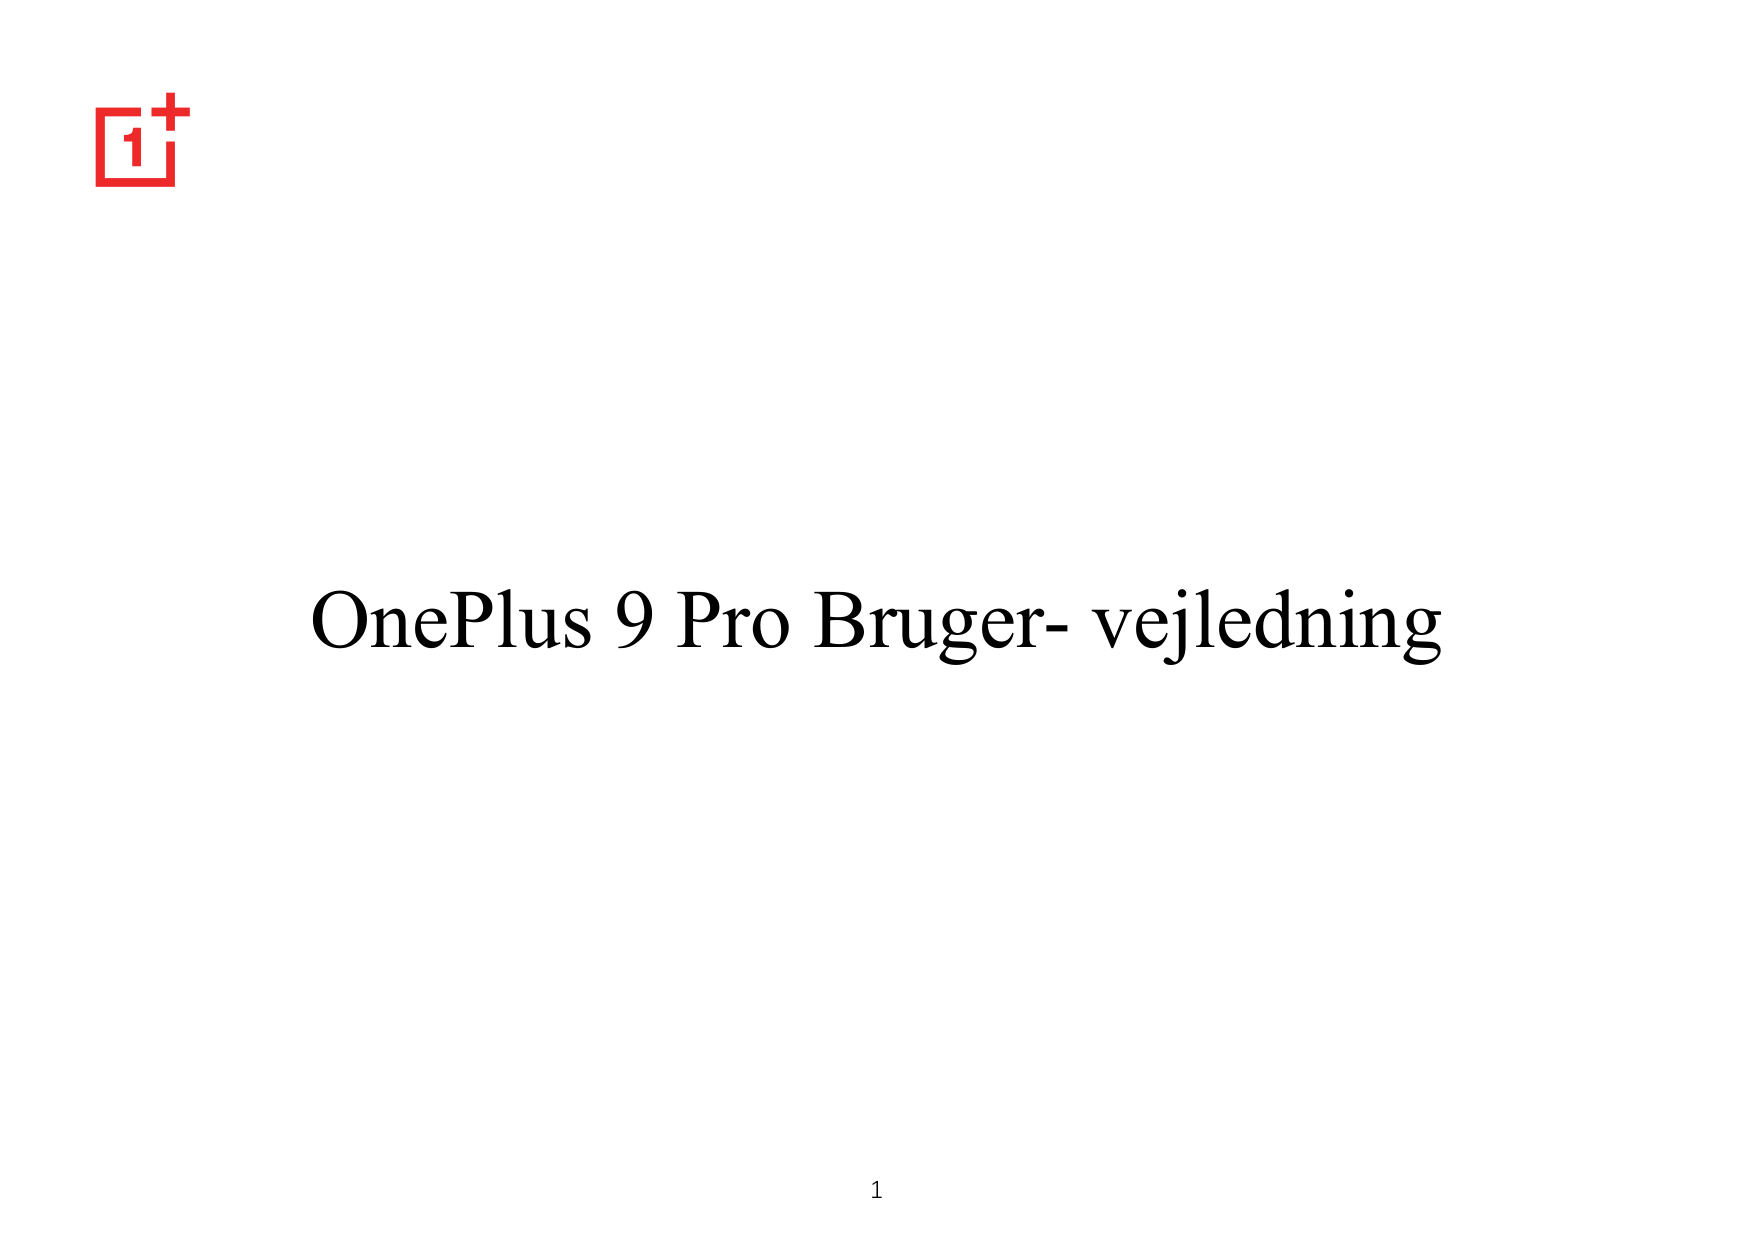 OnePlus 9 Pro Bruger- vejledning1